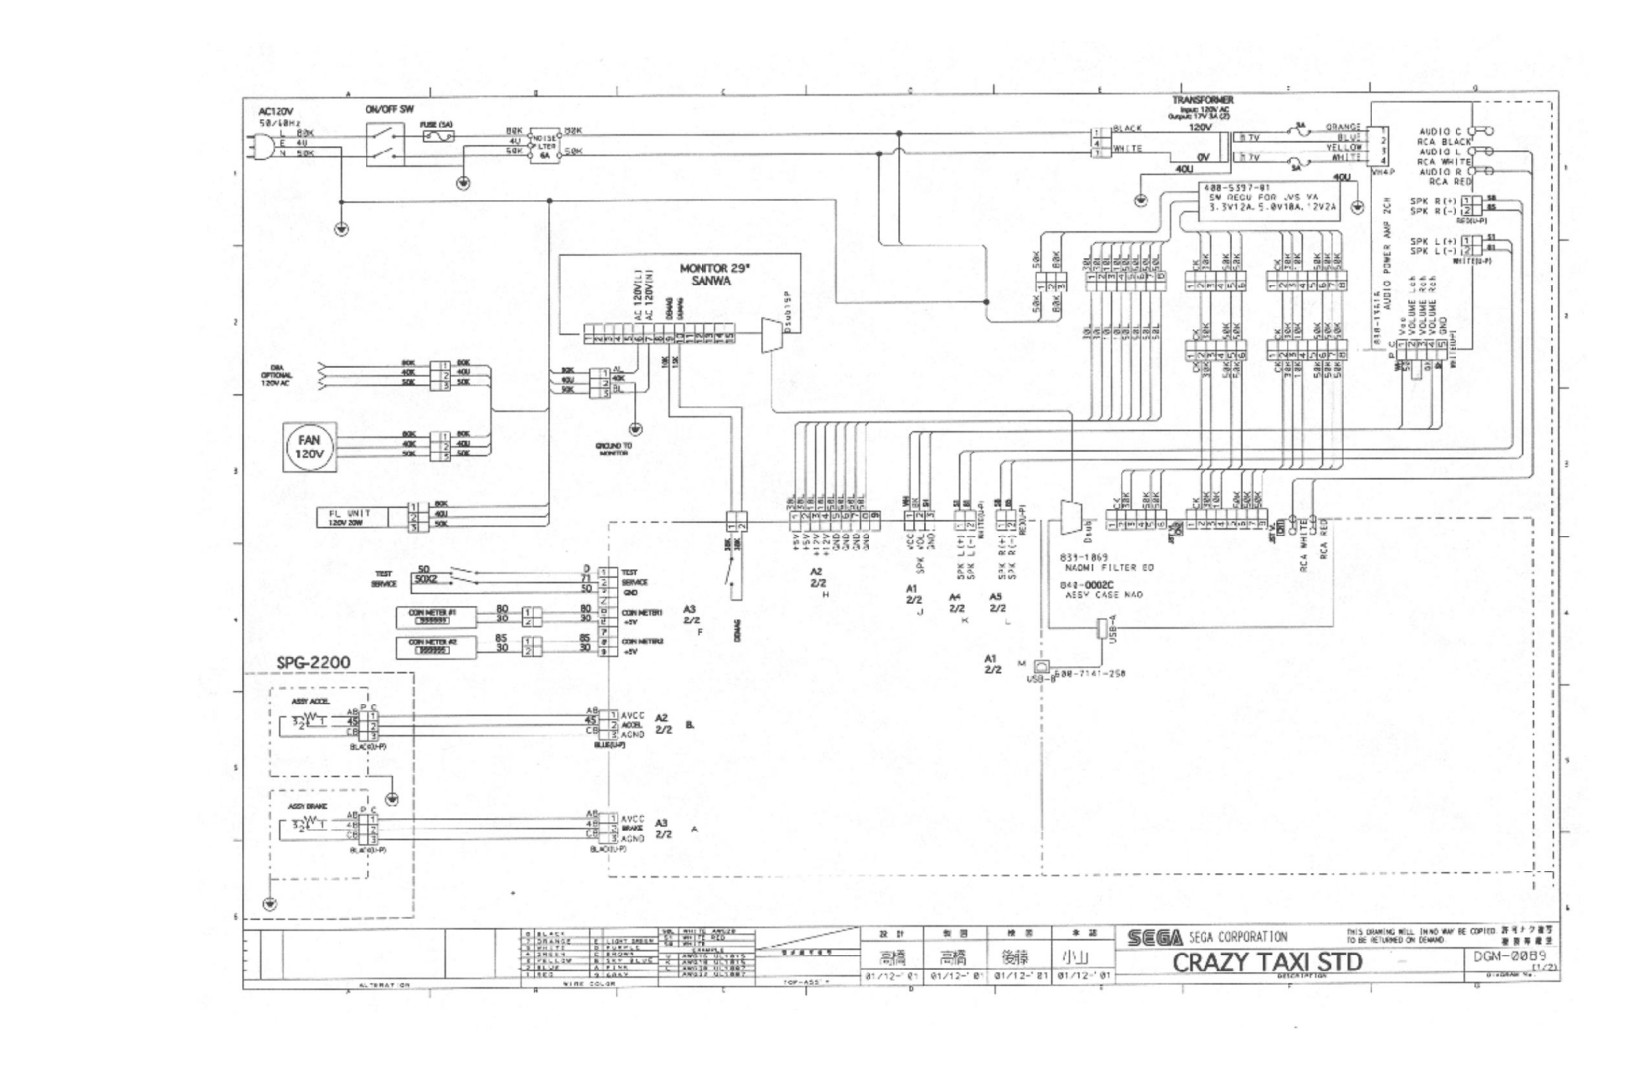 CrazyTaxi 2002 Wiring Diagrams